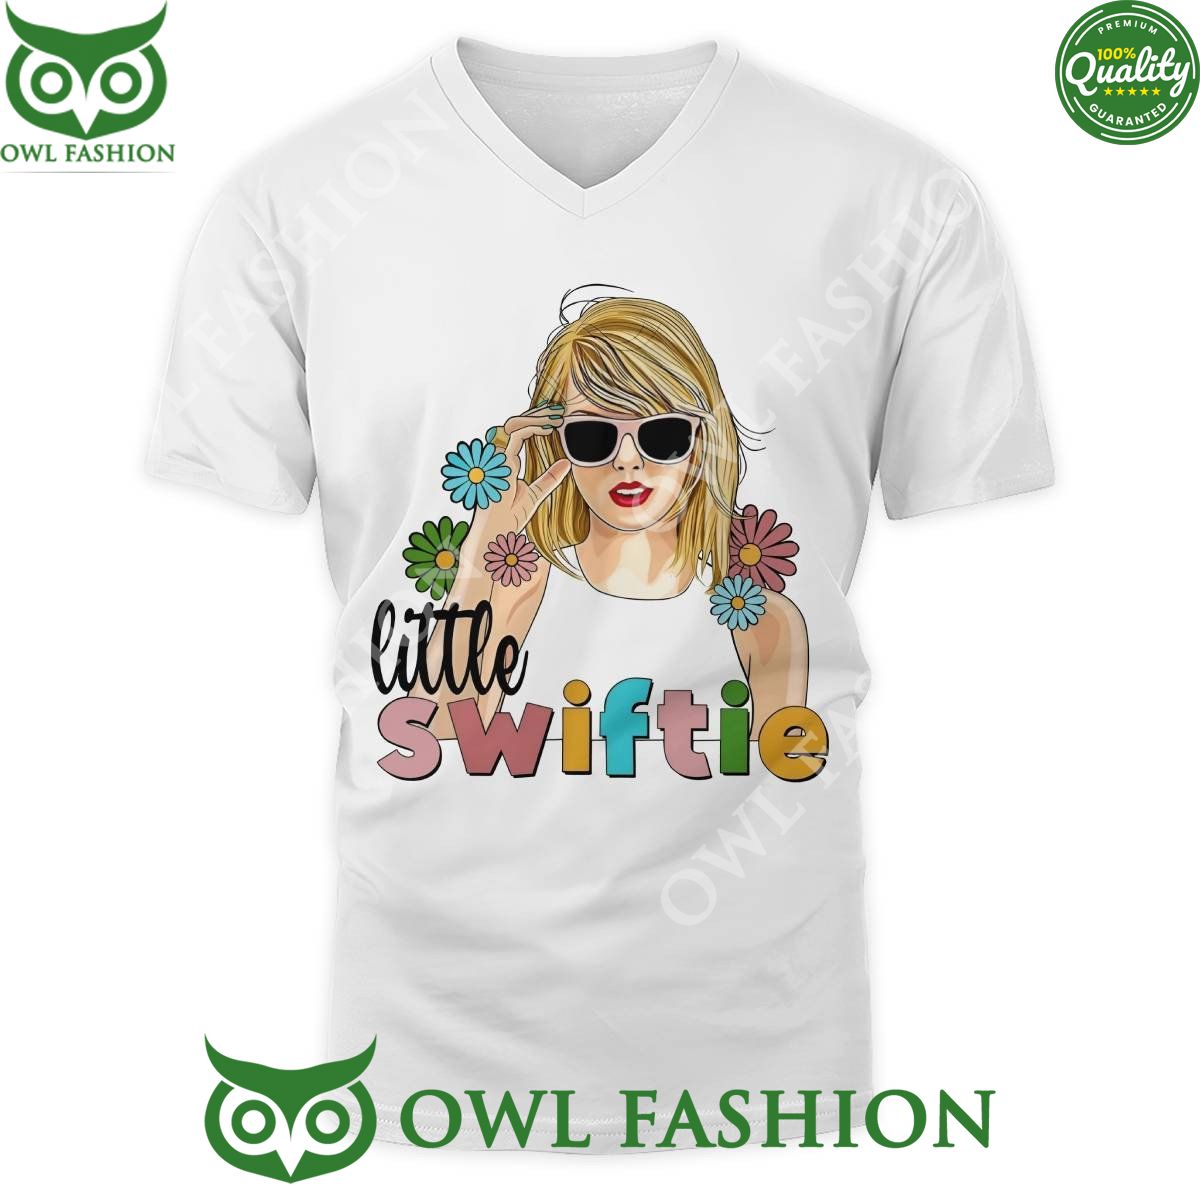 Taylor Swift Little Swiftie Fandom White T shirt Sizzling